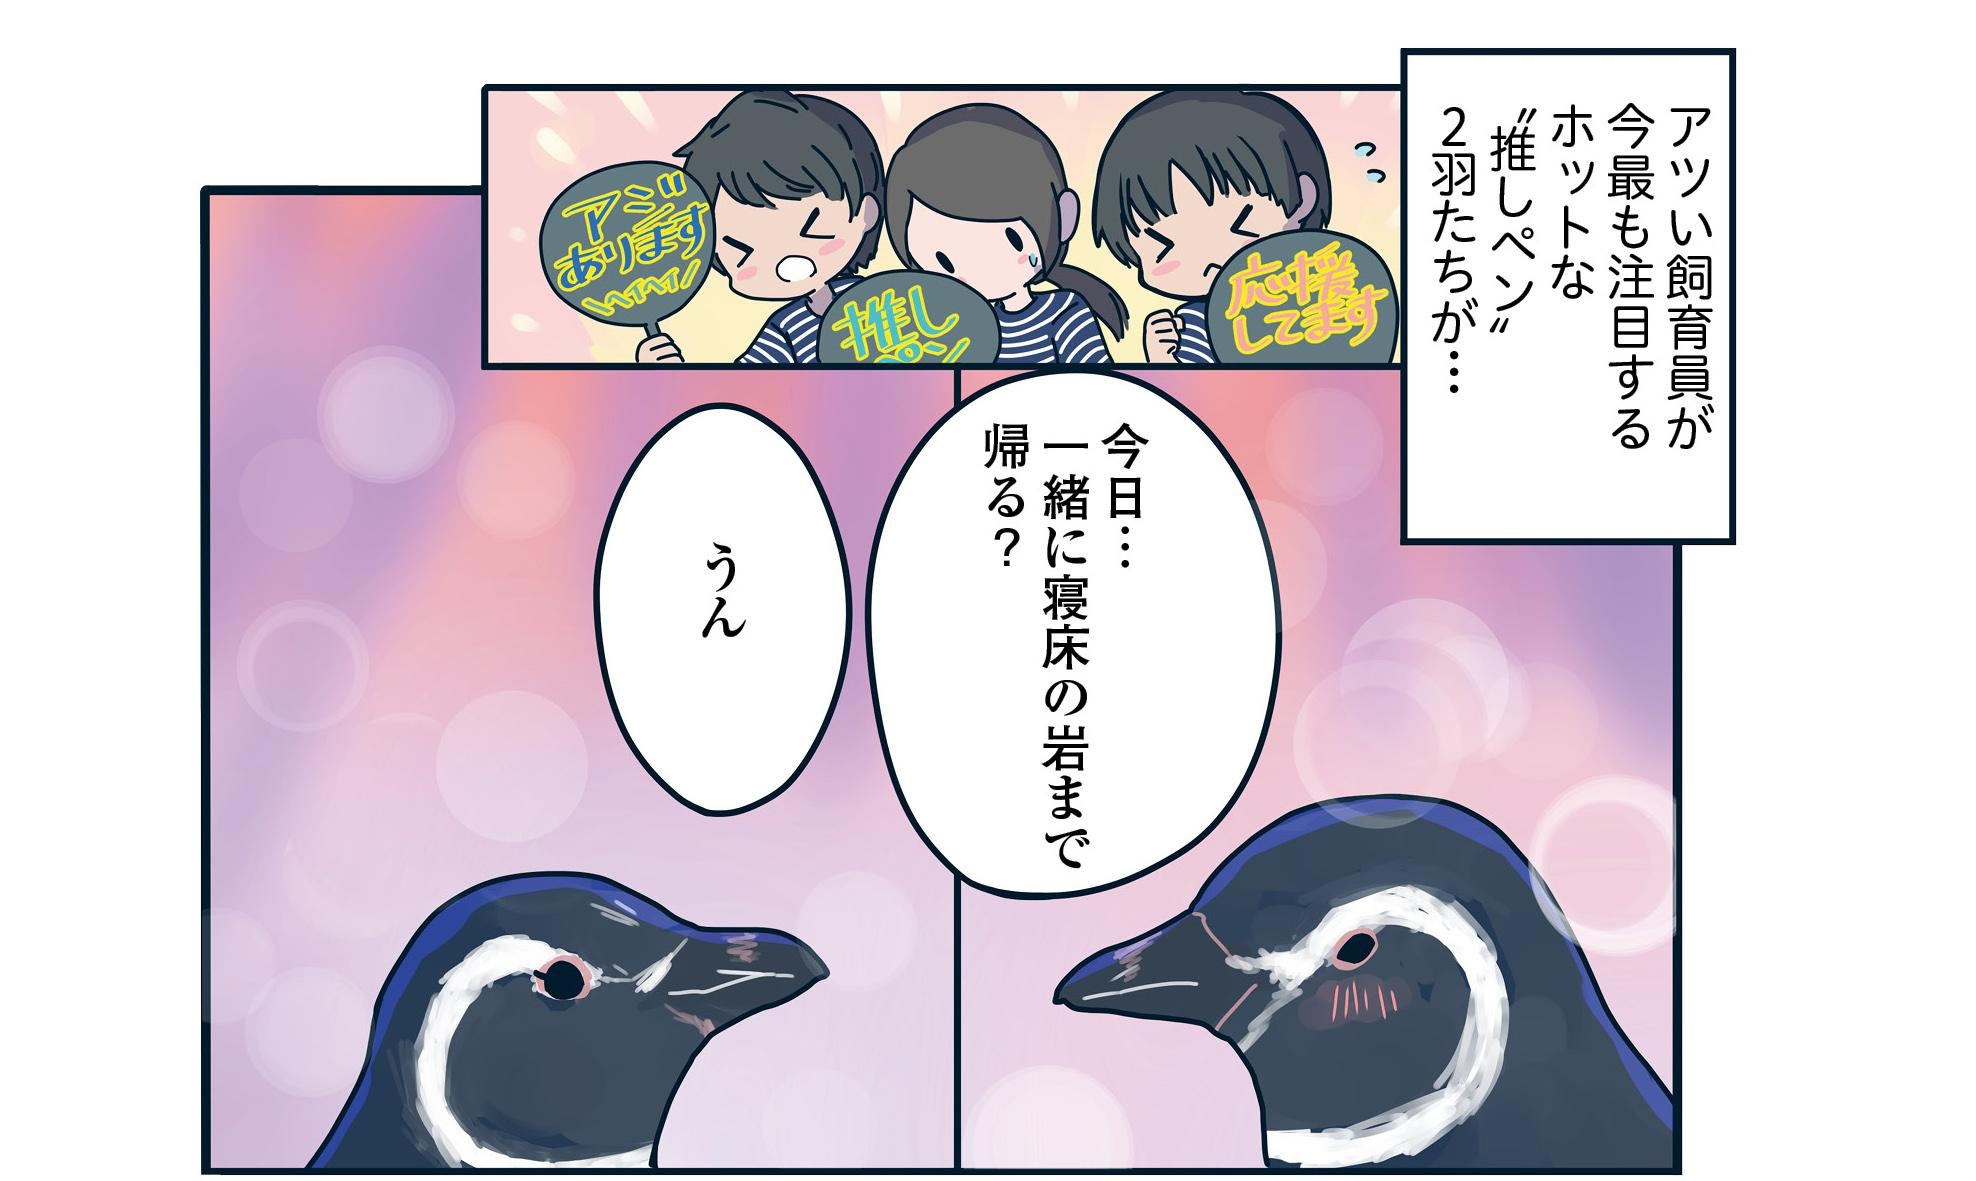 【漫画】人間以上に複雑なペンギン関係！うぶすぎる2羽は恋人秒読みか!?